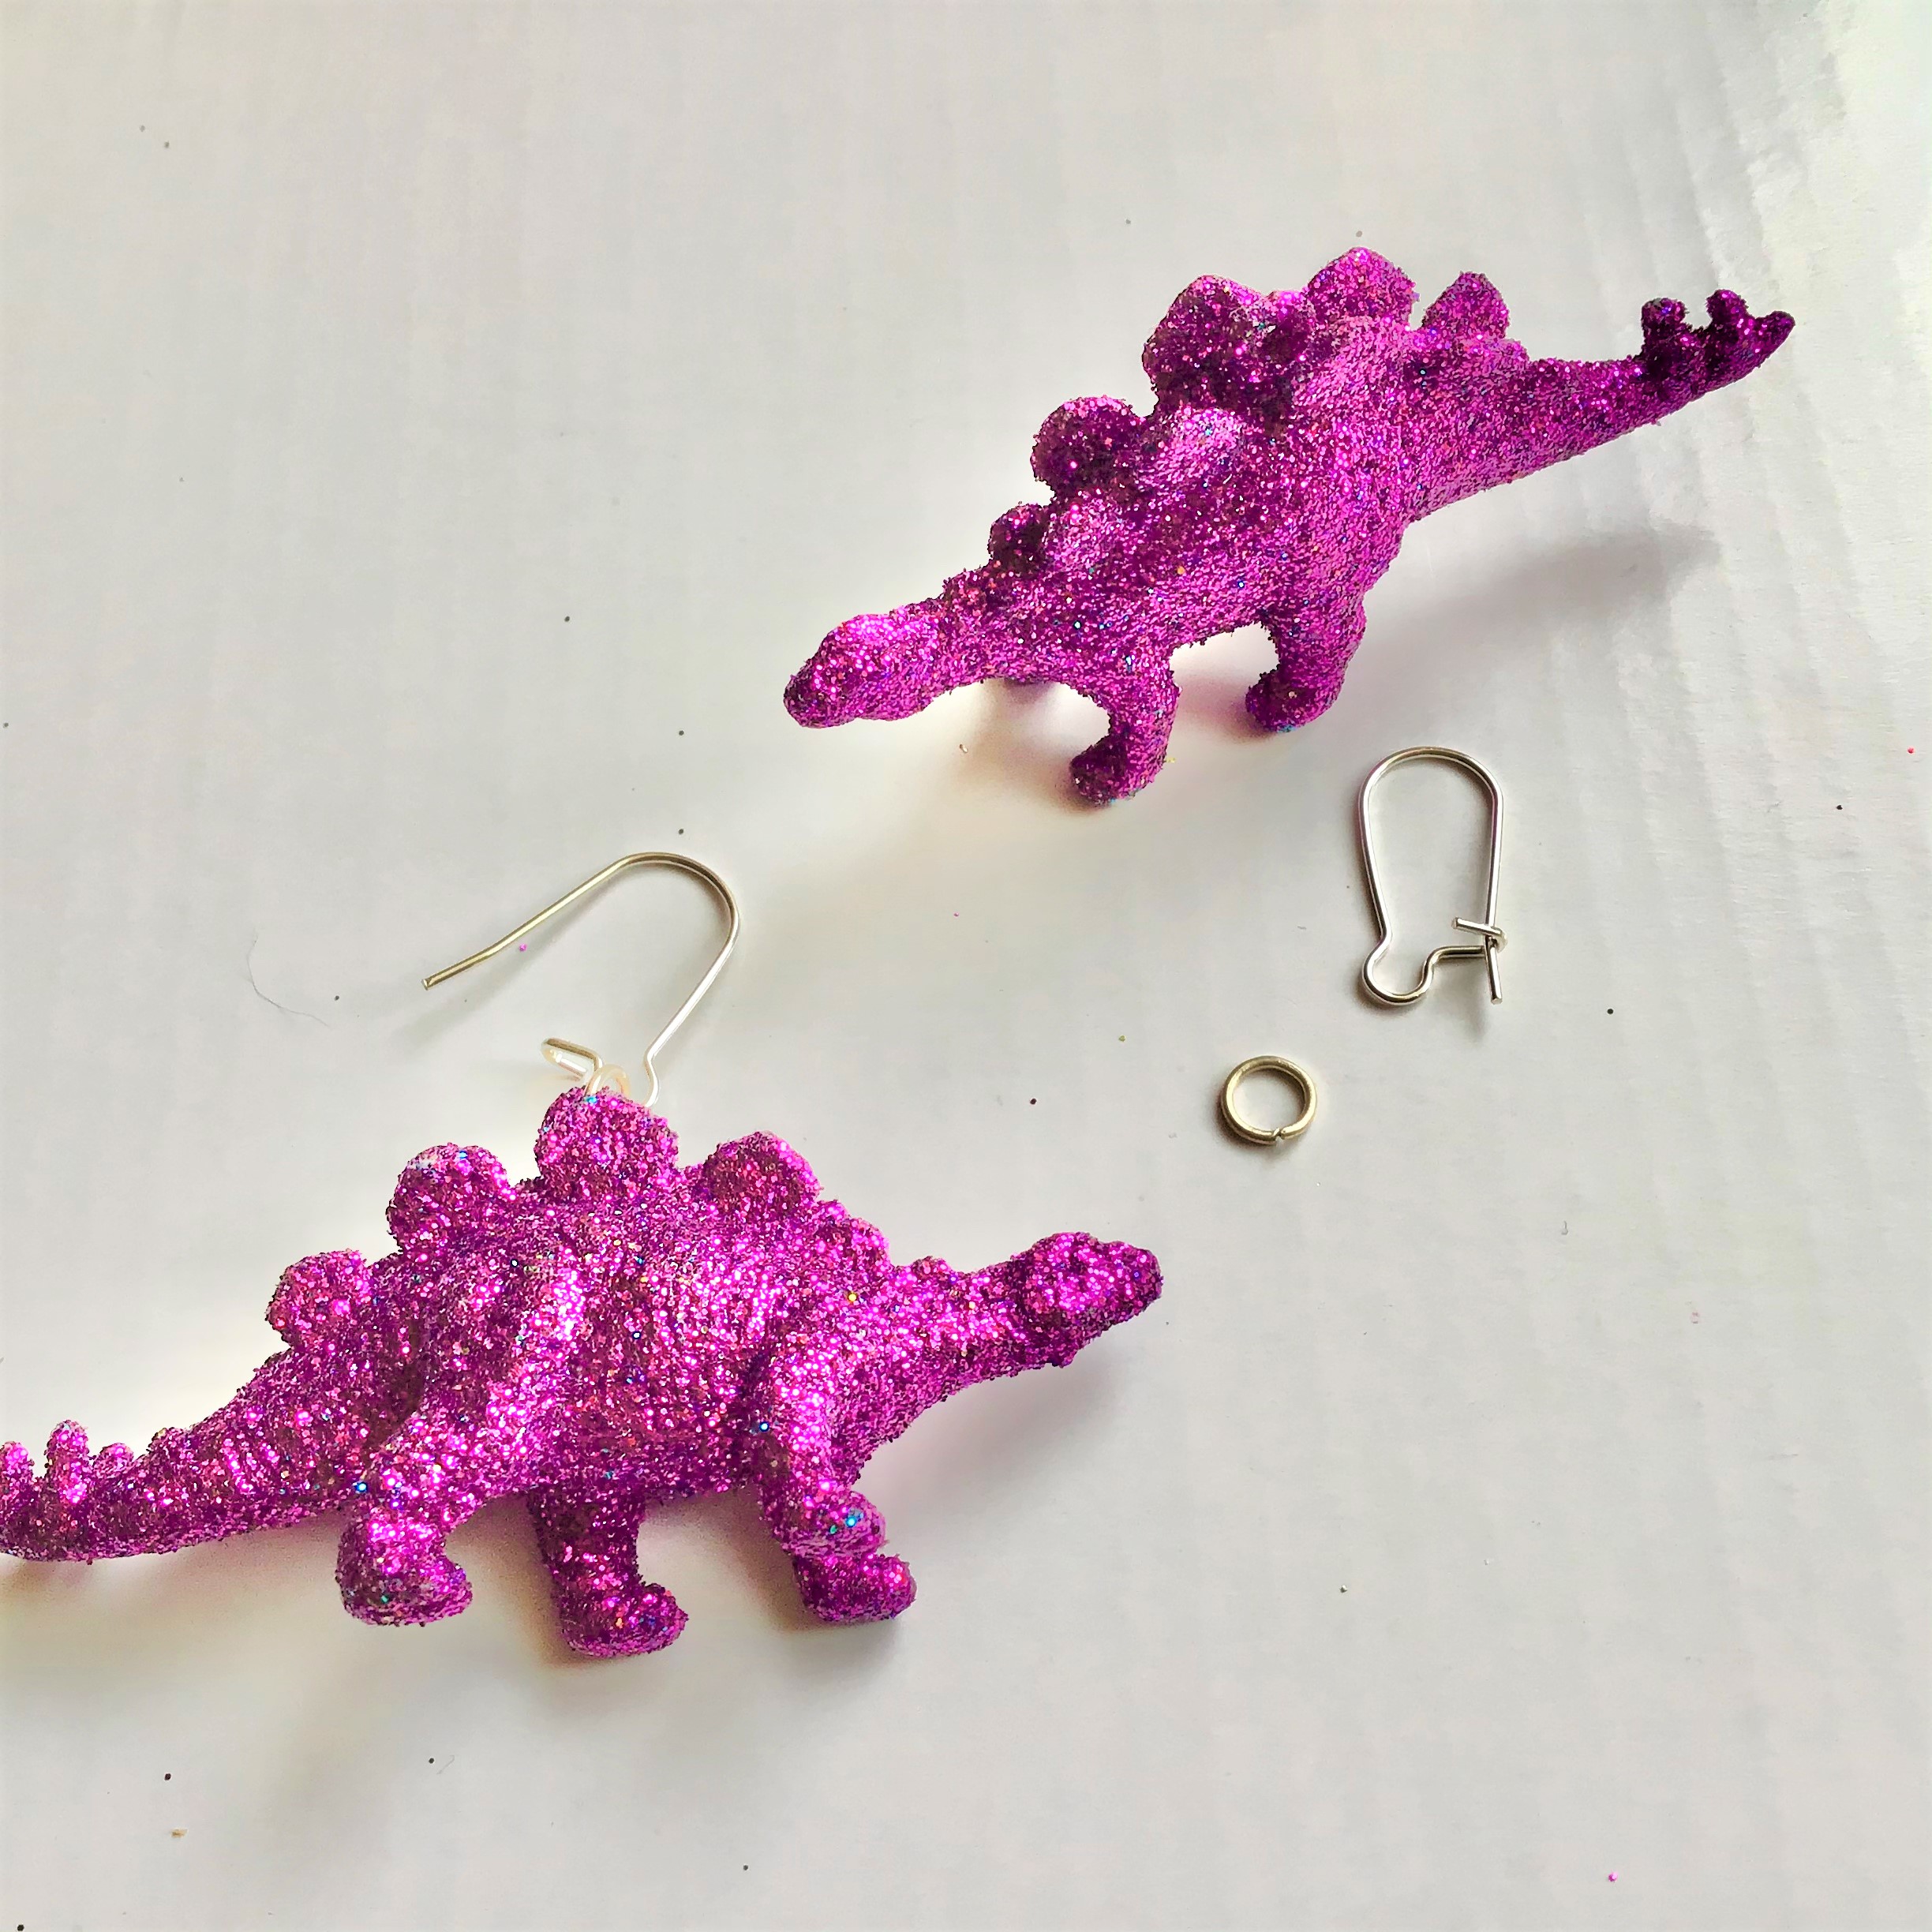 Glitter Dinosaur Earrings DIY - Step One Stegosaurus